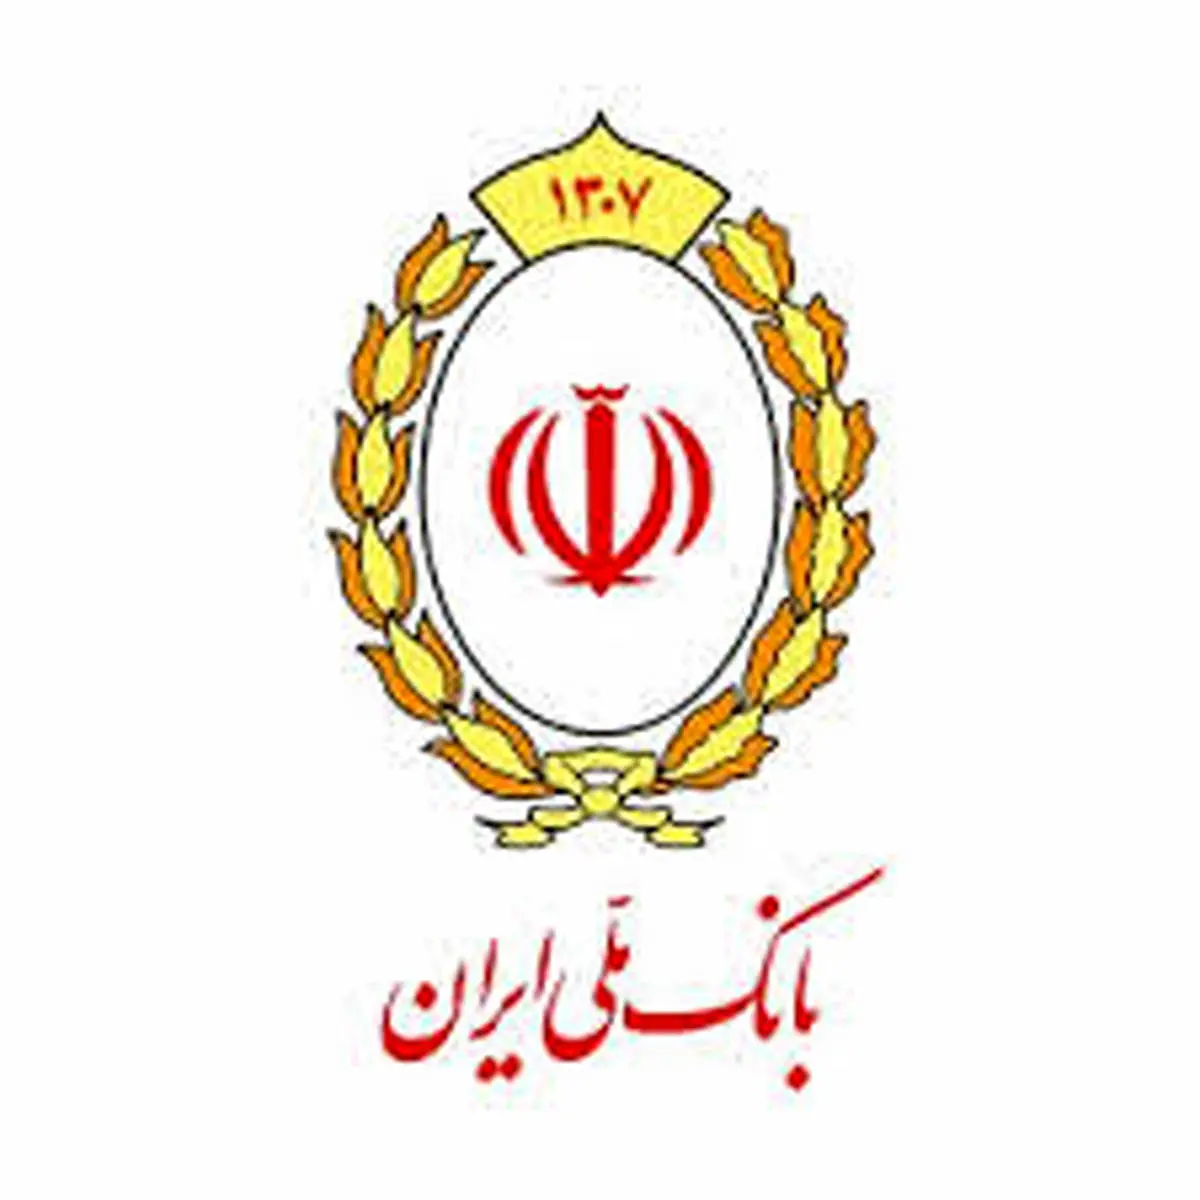 بیانیه بانک ملی ایران در خصوص دعوت به مشارکت حداکثری در انتخابات